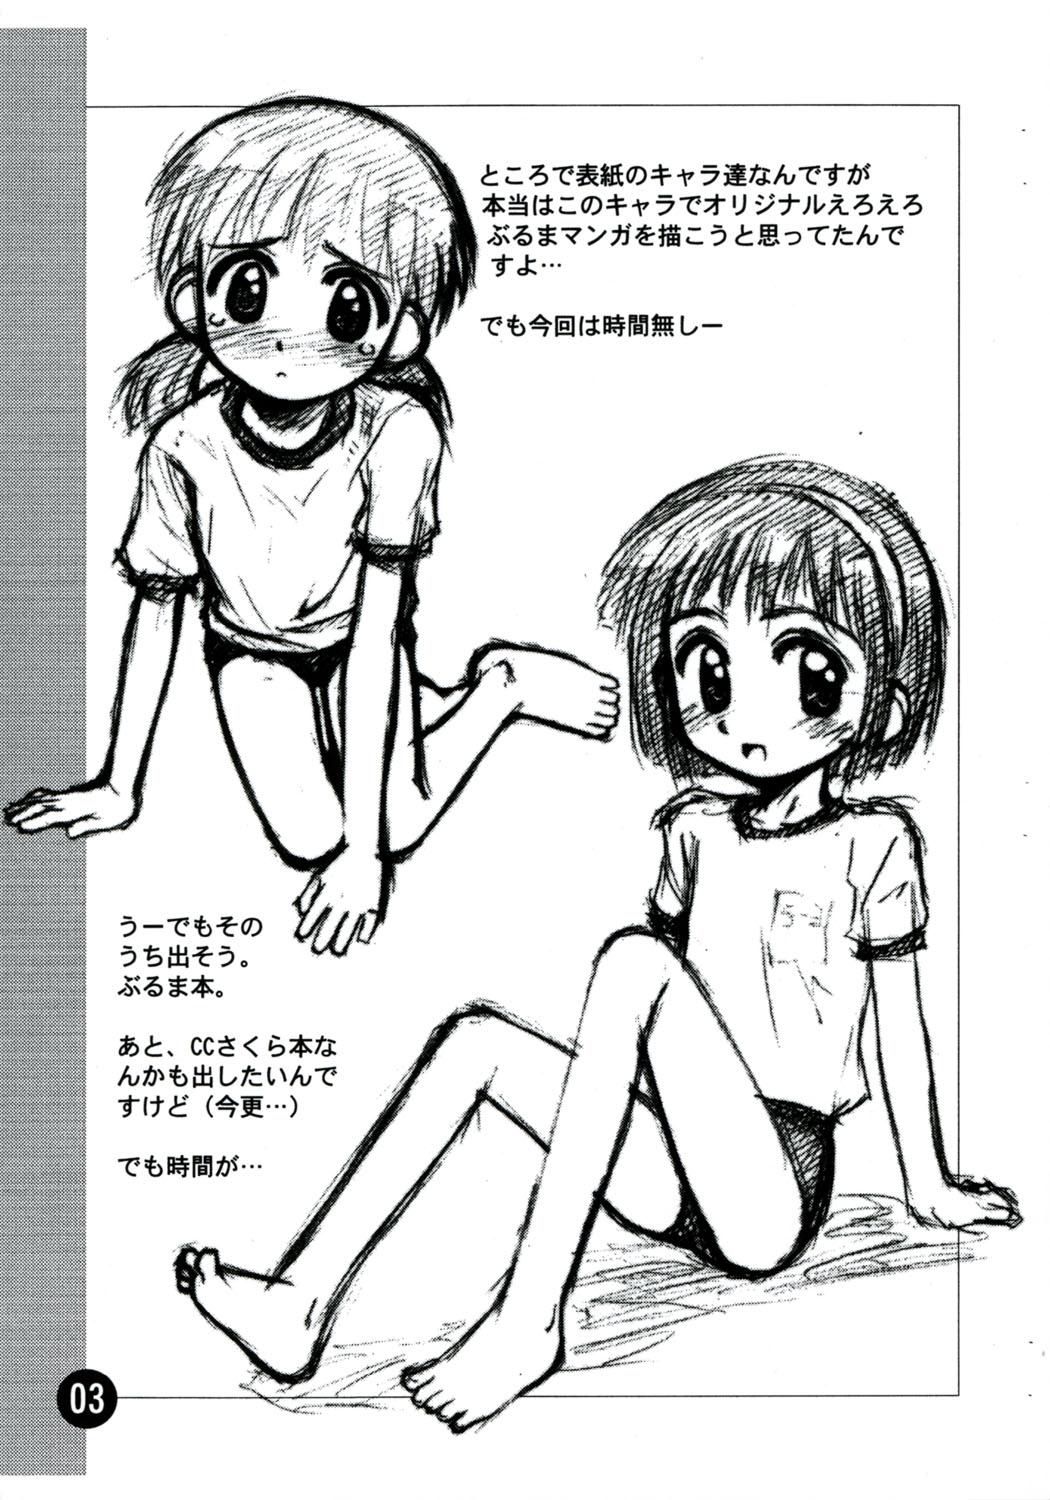 Bra Rakugaki File 4 Yon - Cosmic baton girl comet-san High Heels - Page 3